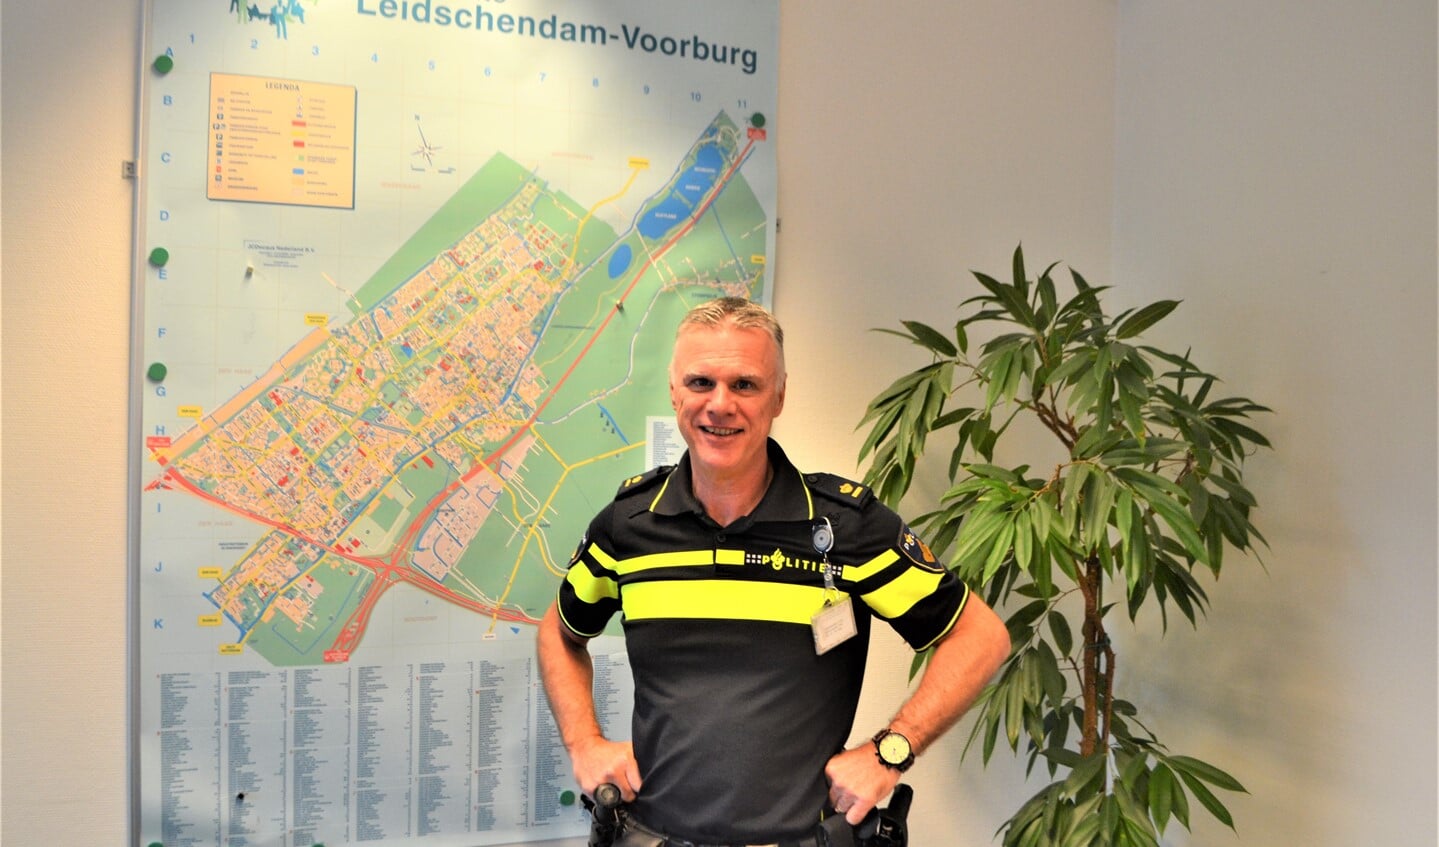 Als teamchef bij de politie Leidschendam-Voorburg is Ronald de Haas niet alleen verantwoordelijk voor de wijkagenten maar voor het hele basisteam (foto: Inge Koot).